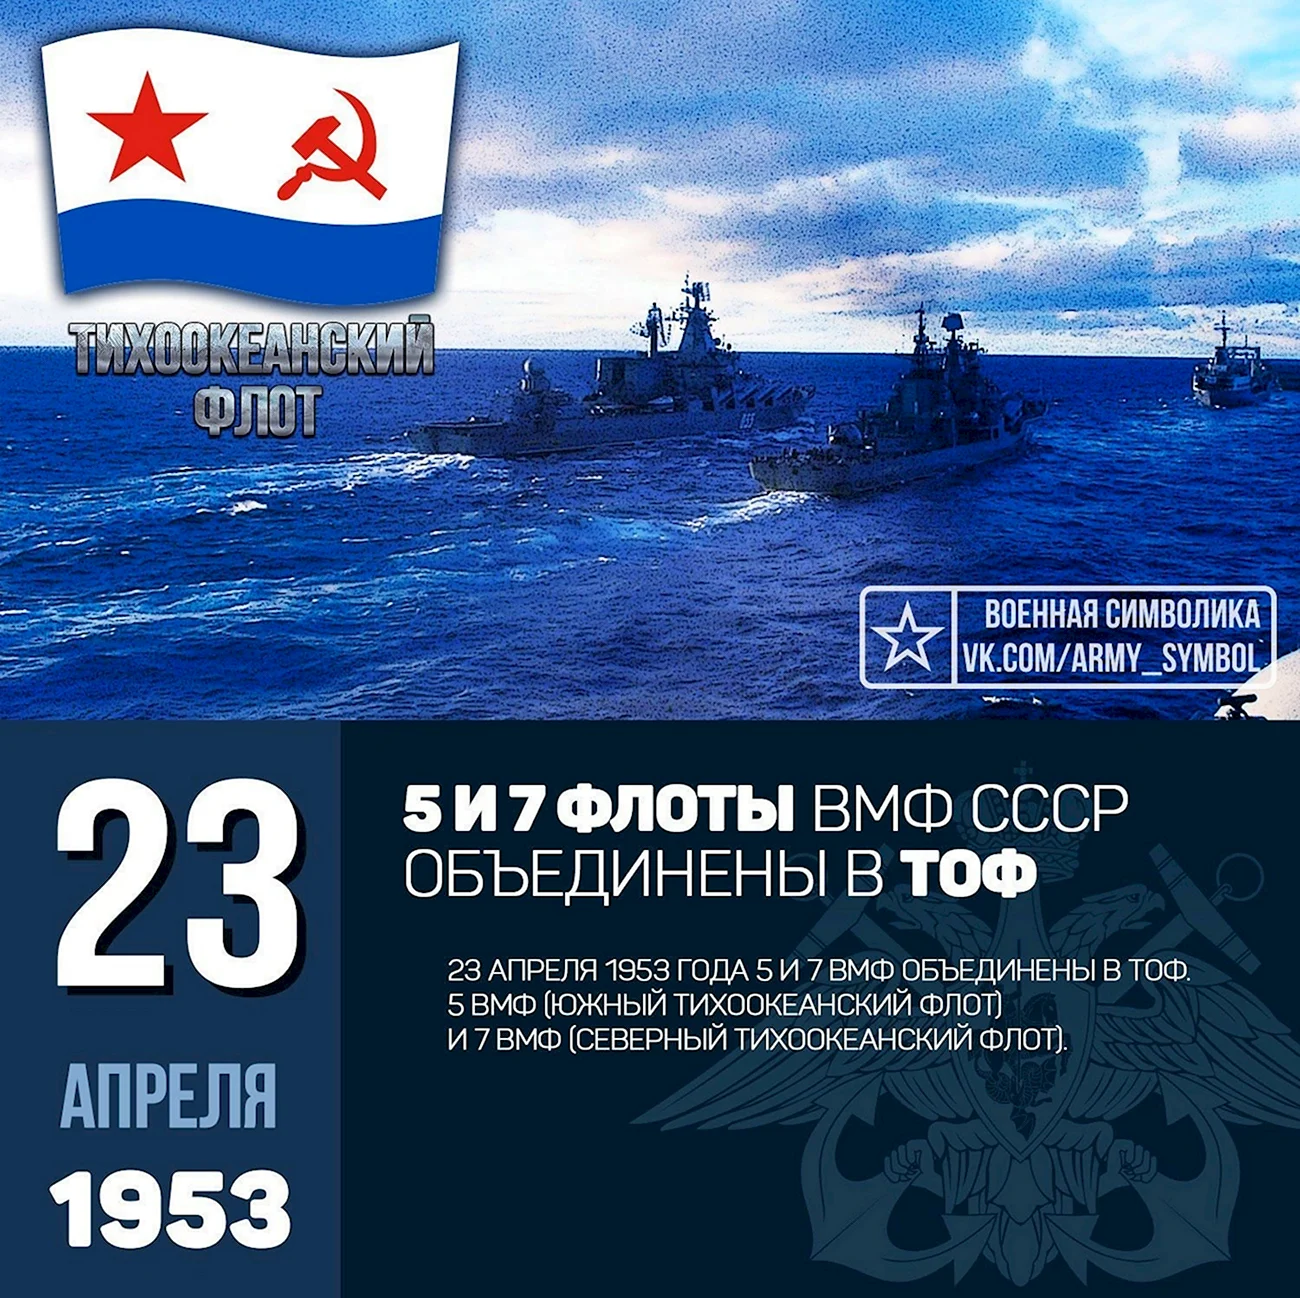 Символика ВМФ СССР Тихоокеанского флота. Поздравление